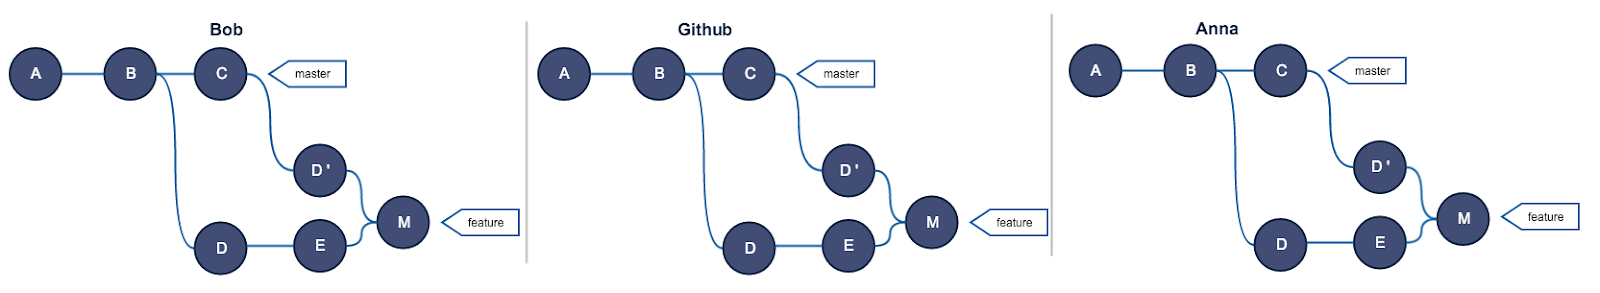 Руководство по Git. Часть №2: золотое правило и другие основы rebase - 9